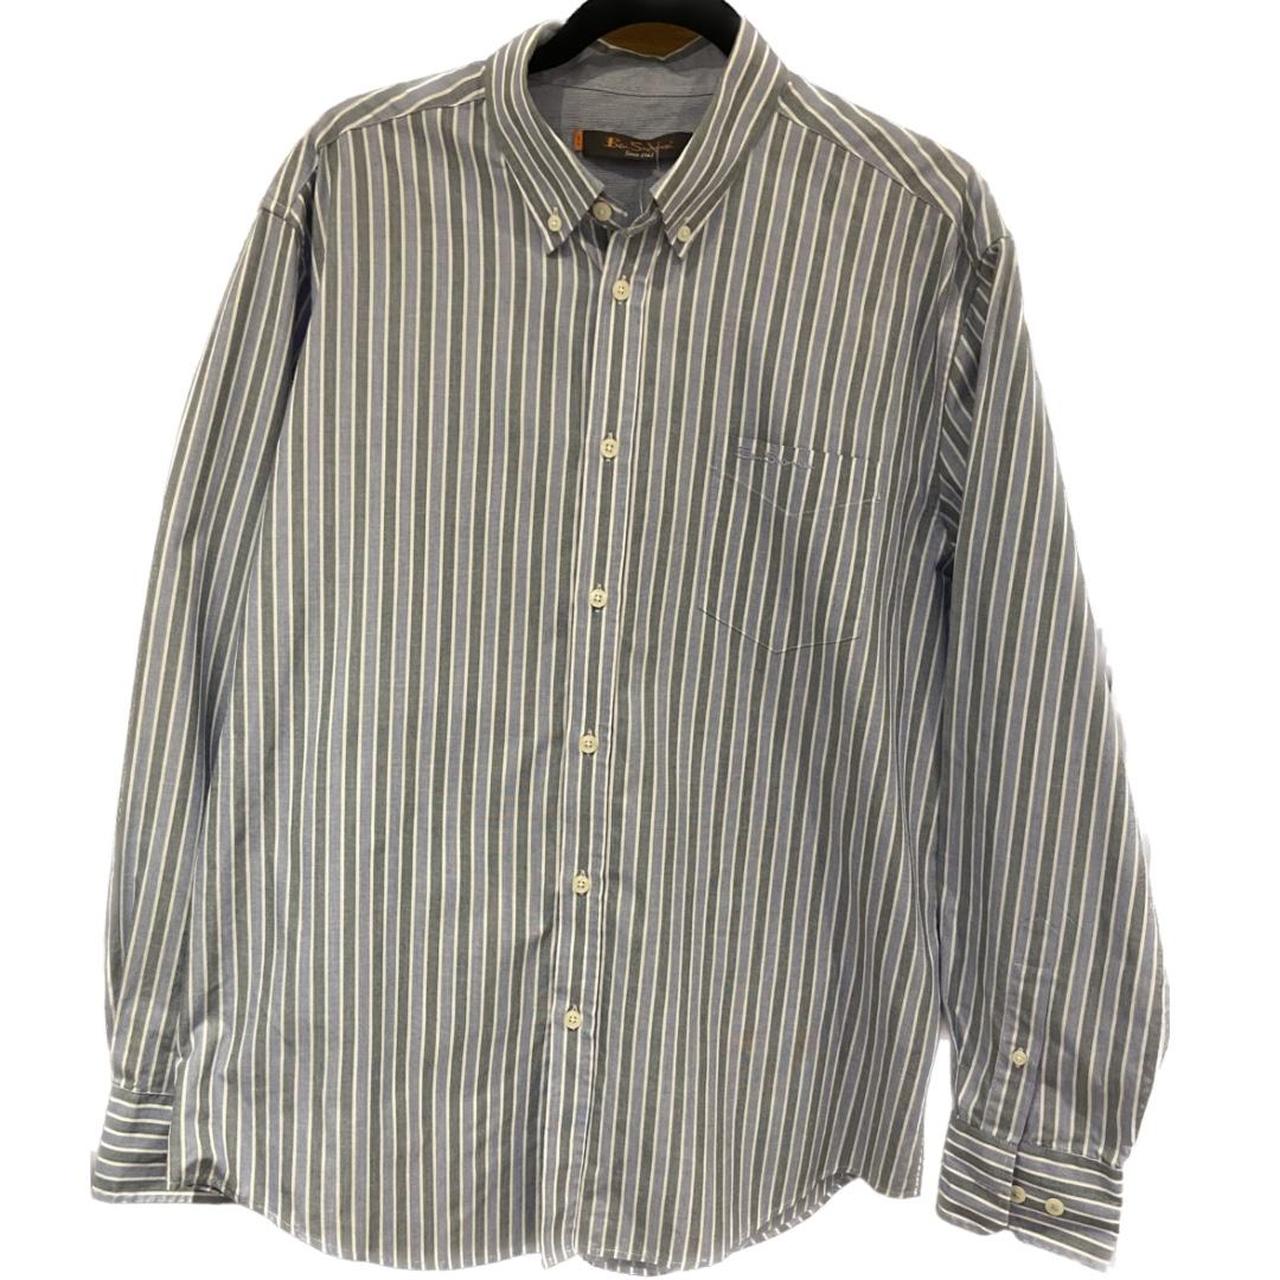 Ben Sherman Long Sleeved Shirt - XL Grey / Light... - Depop